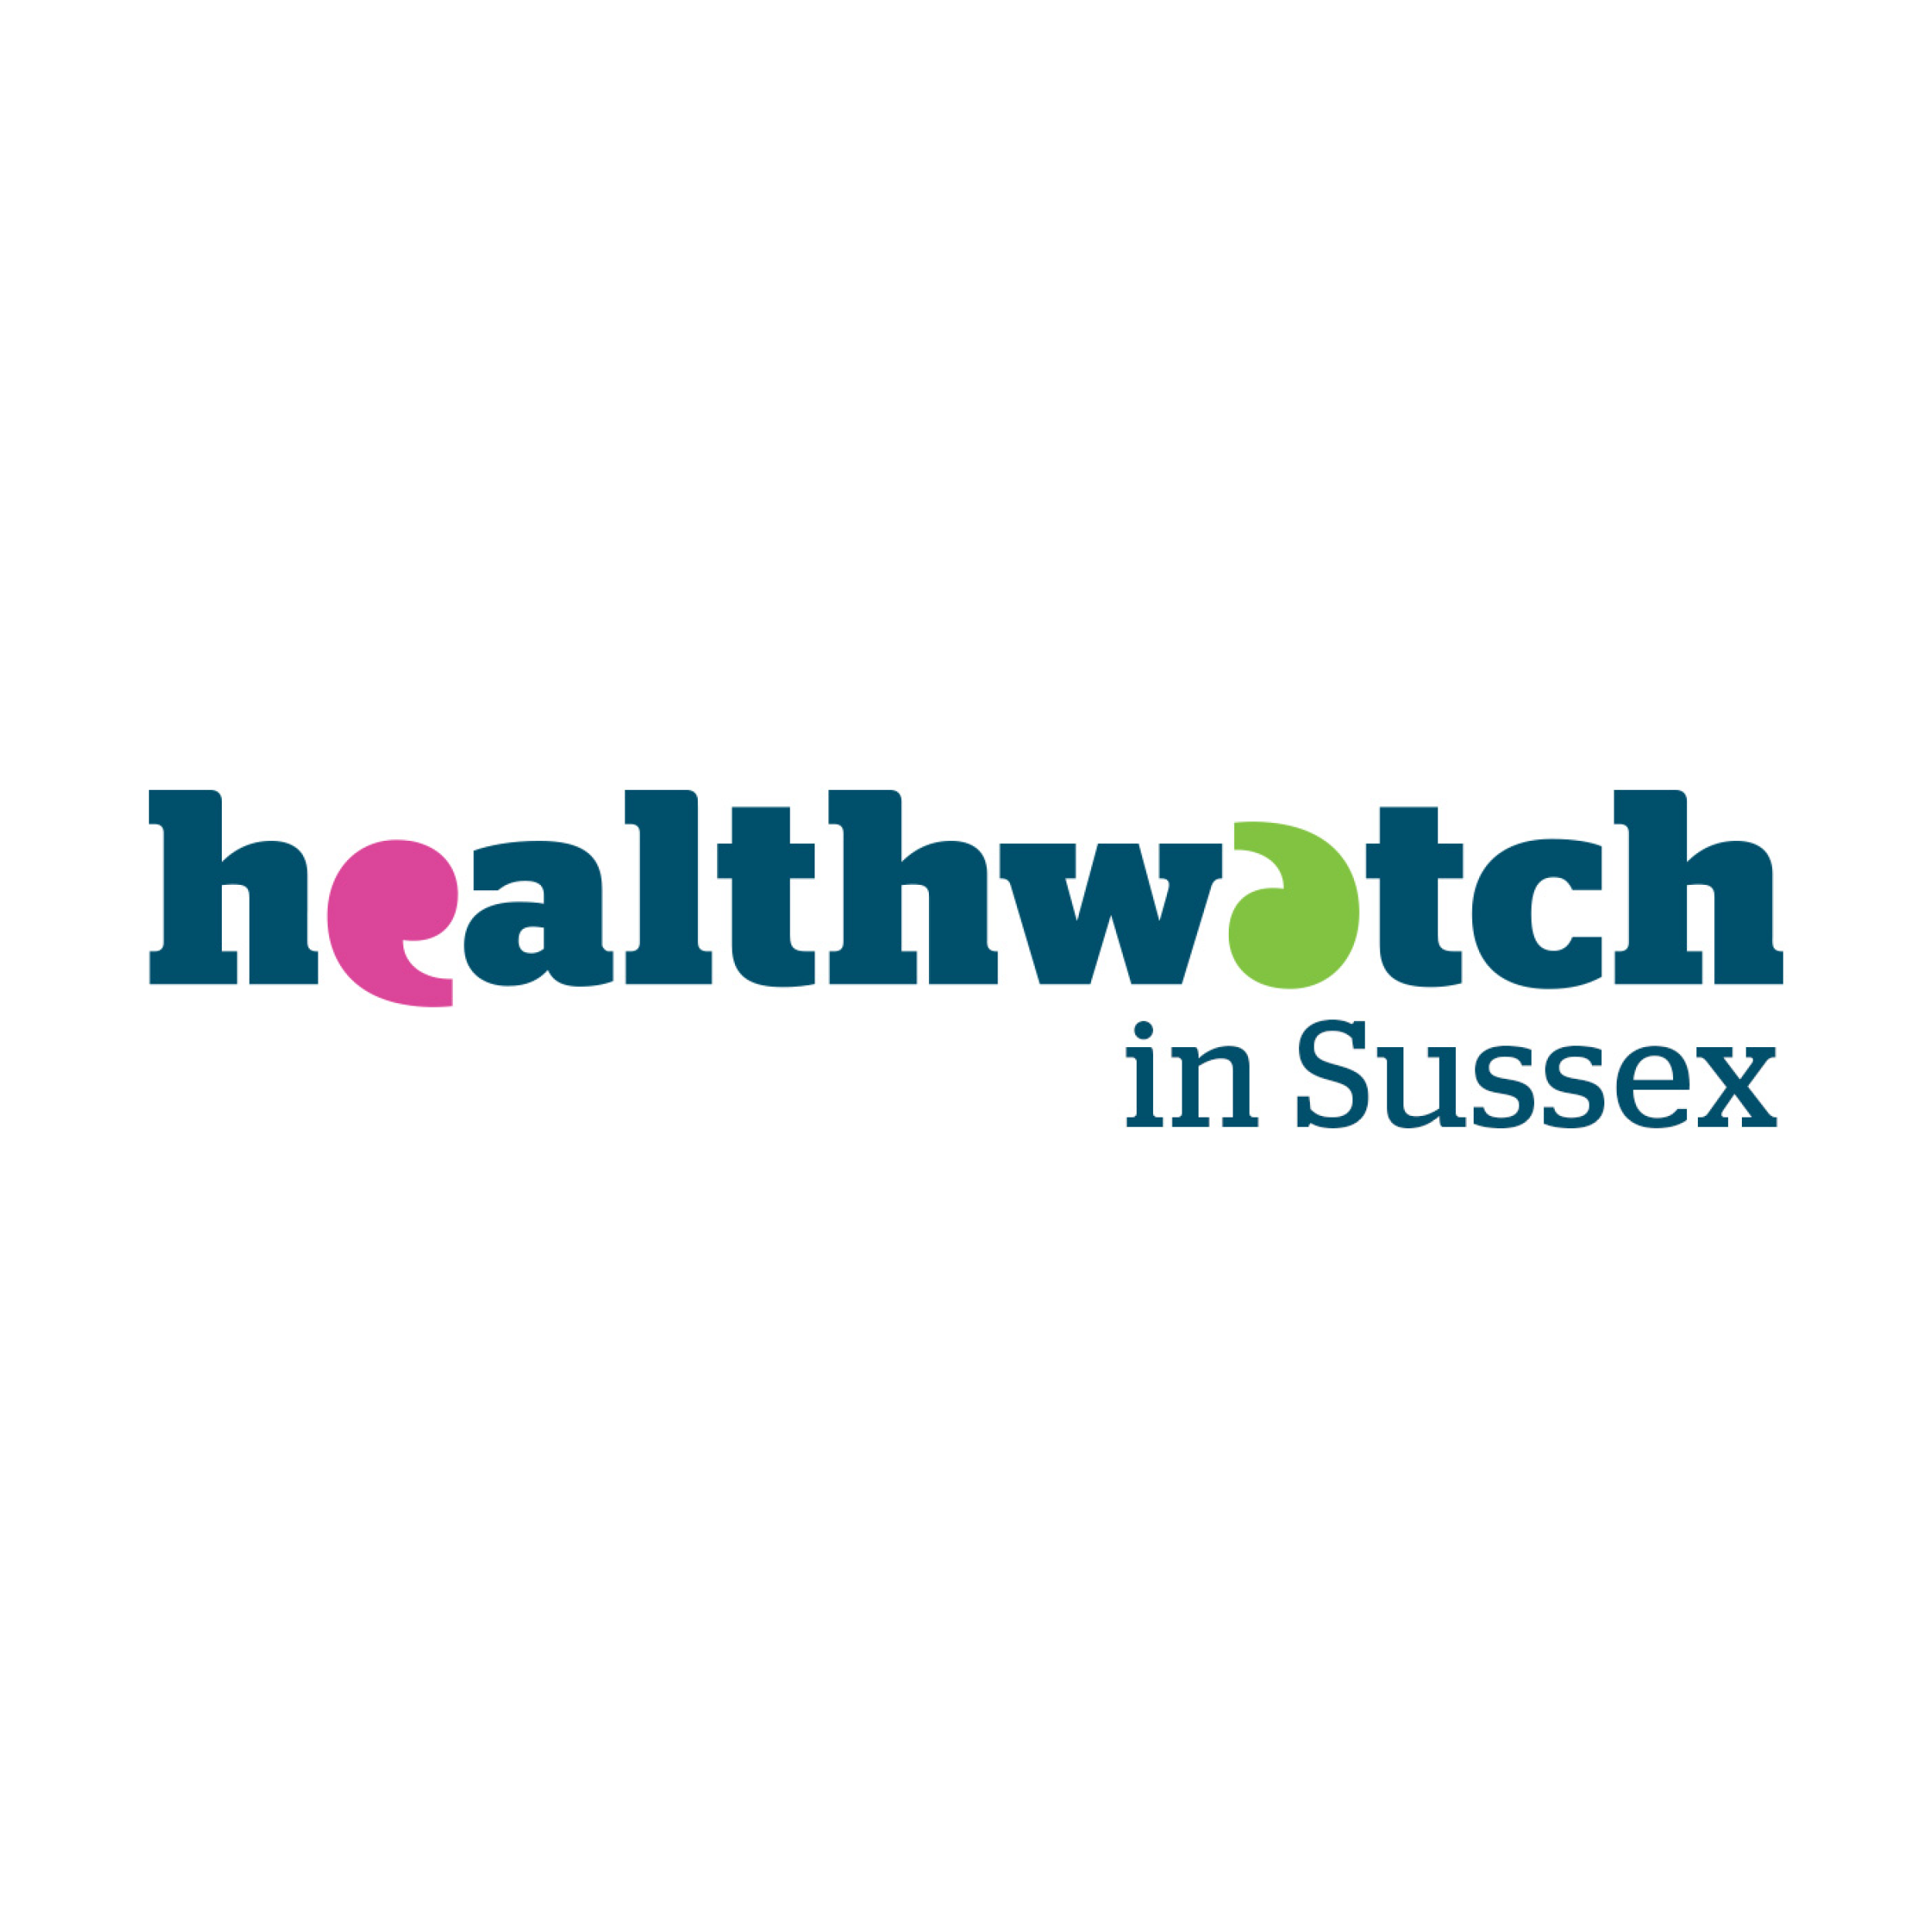 Healthwatch in Sussex logo